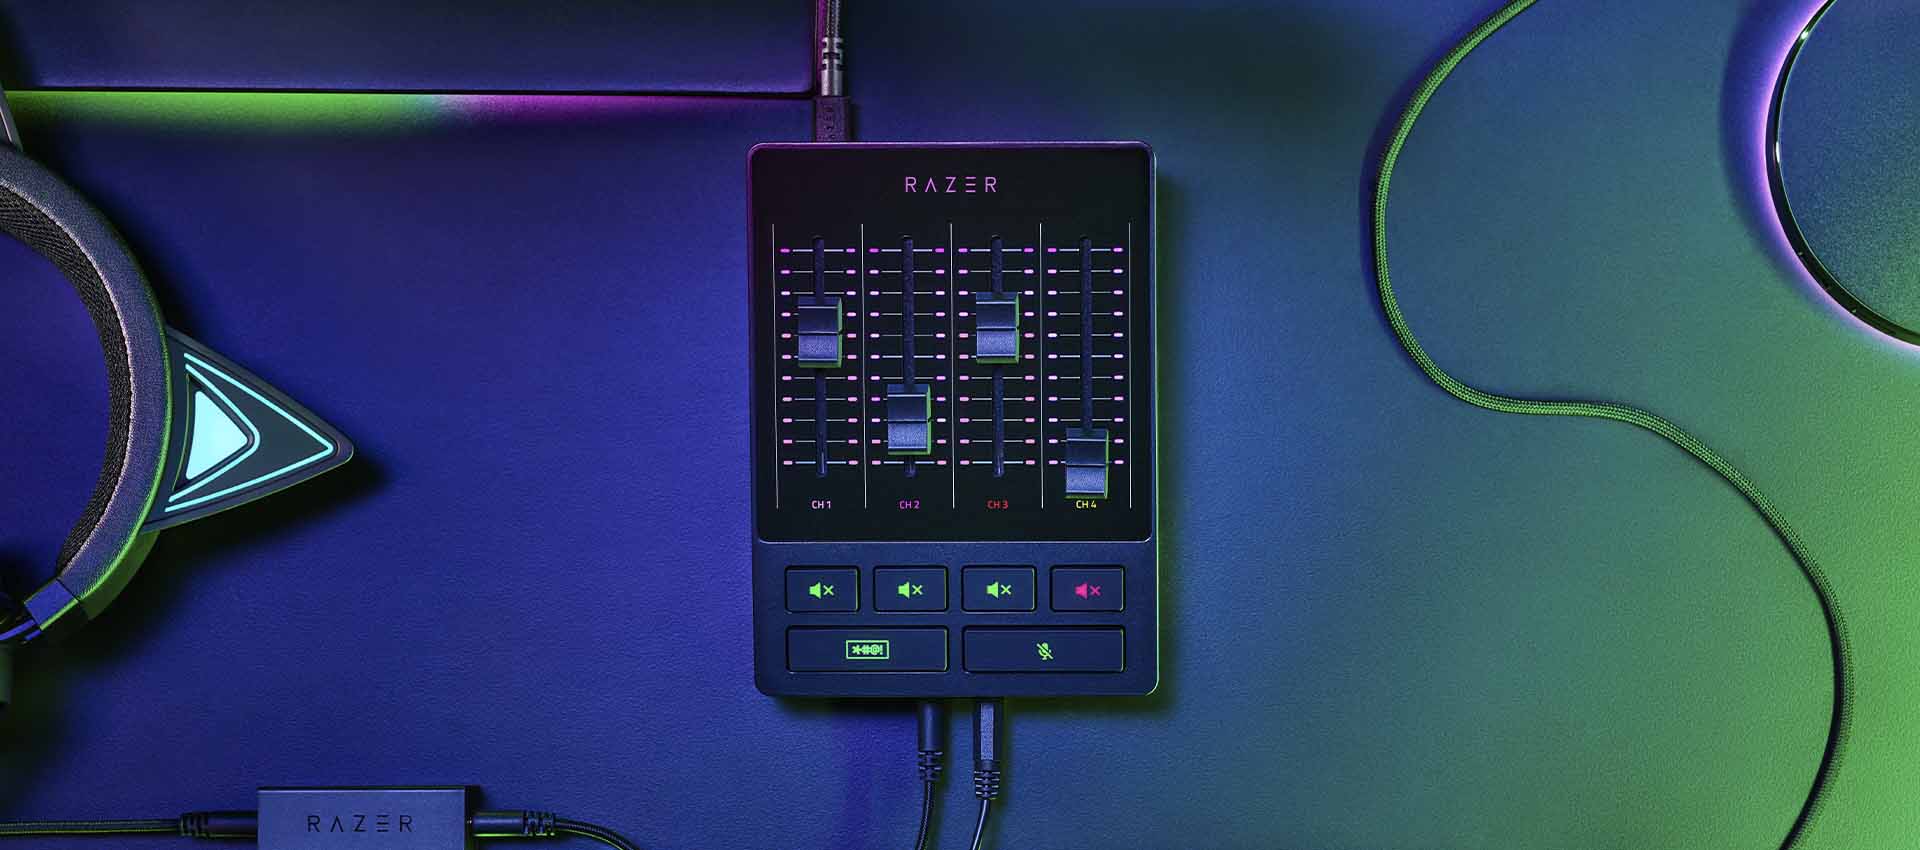 میکسر صدای ریزر مدل Razer Audio Mixer